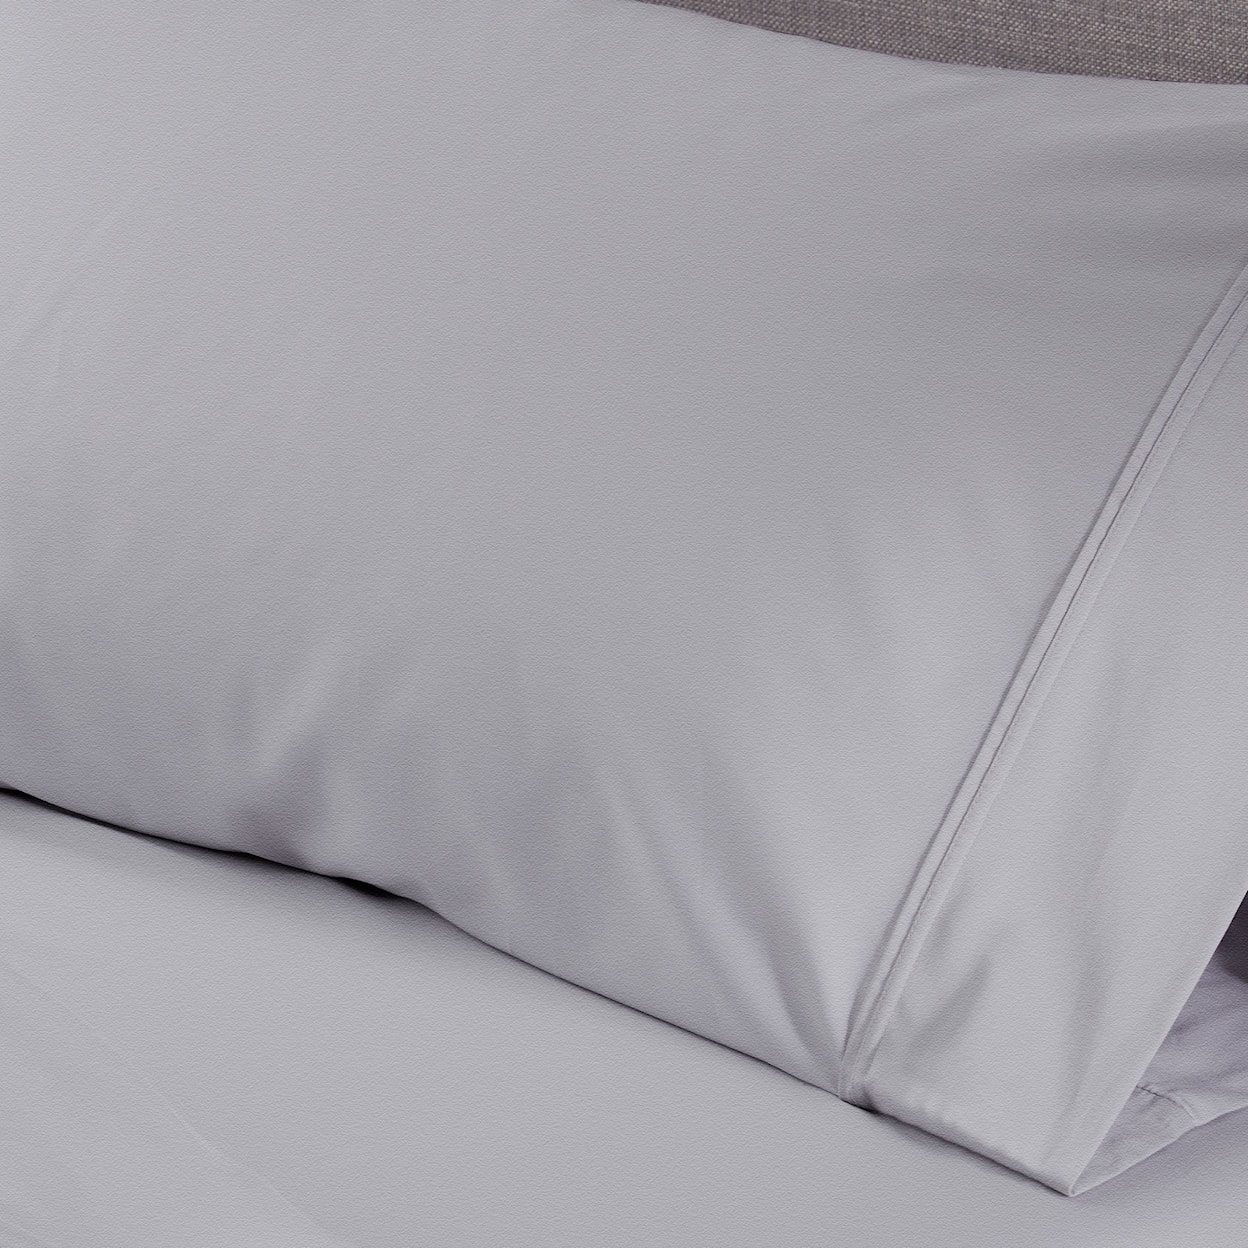 Bedgear Hyper-Wool Sheets Sheet Set,Grey, Queen